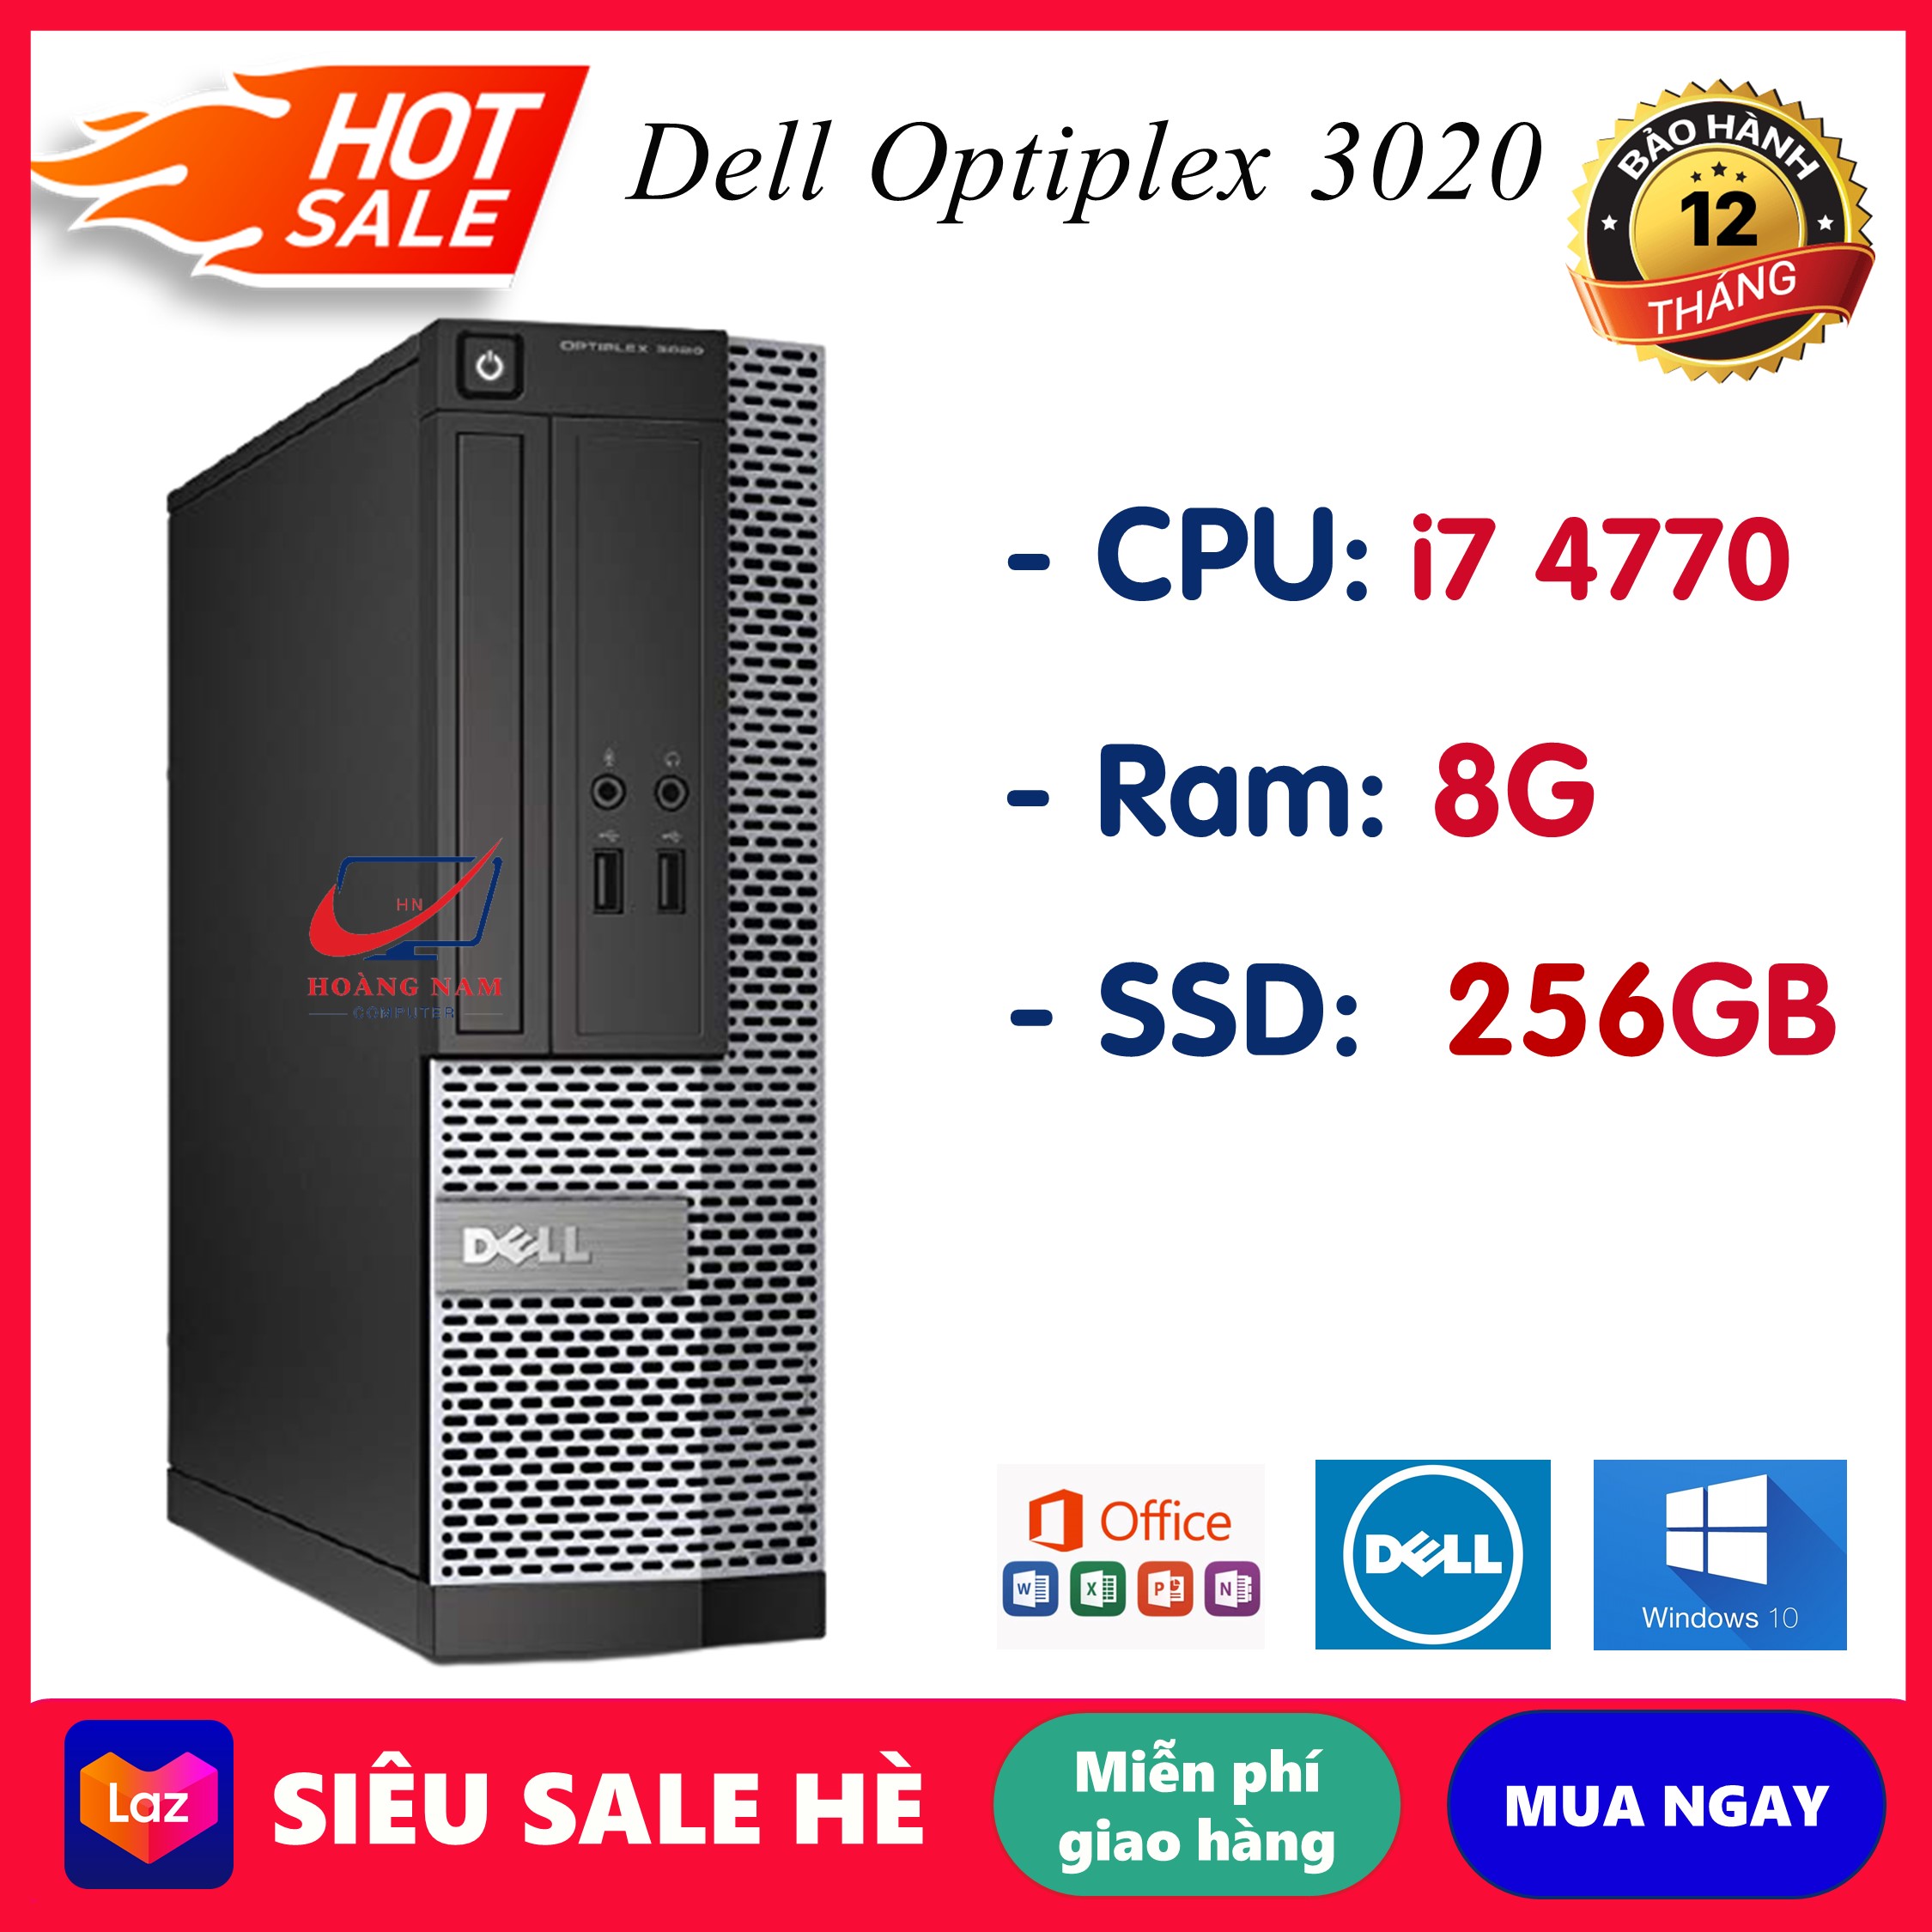 Case máy tính để bàn đồng bộ Dell Optiplex 3020 Core i7 4770/Ram 8GB/SSD 256GB, máy văn phòng cấu hình cao siêu bền, bảo hành 12 tháng lỗi 1 đổi 1